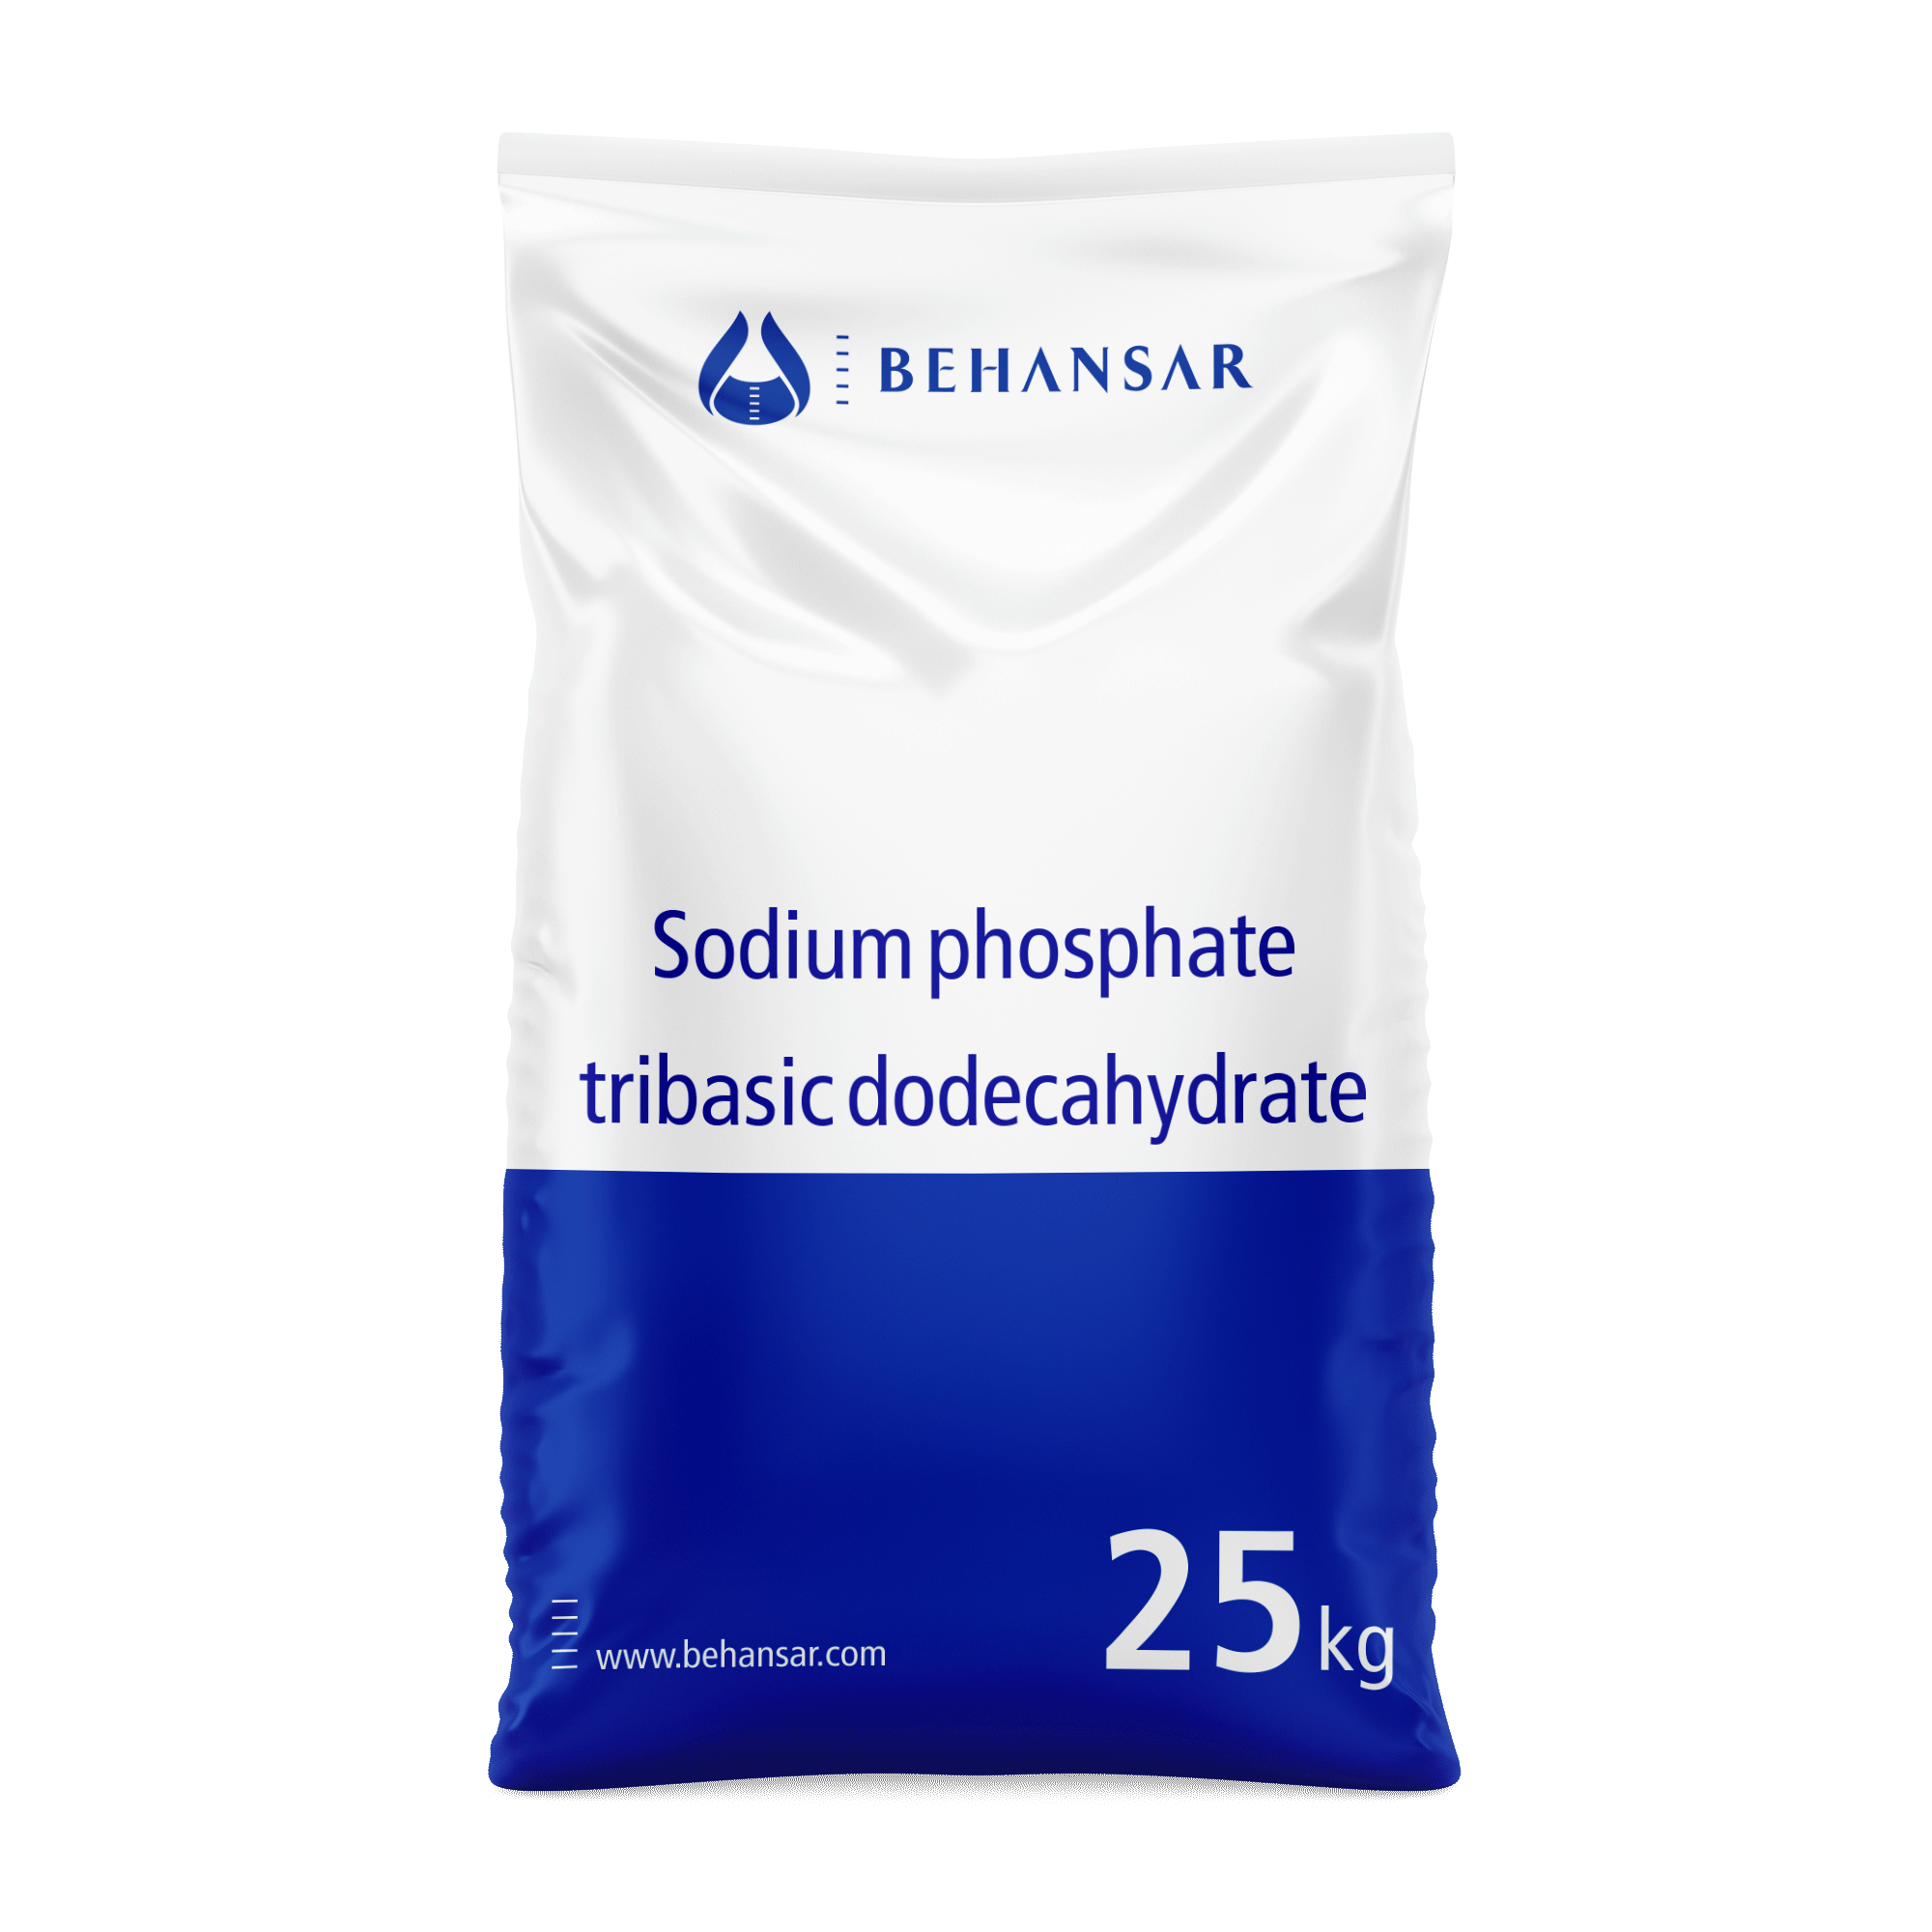 سدیم فسفات تری بازیک دودکا هیدرات یکی از تولیدات شرکت بهانسار است